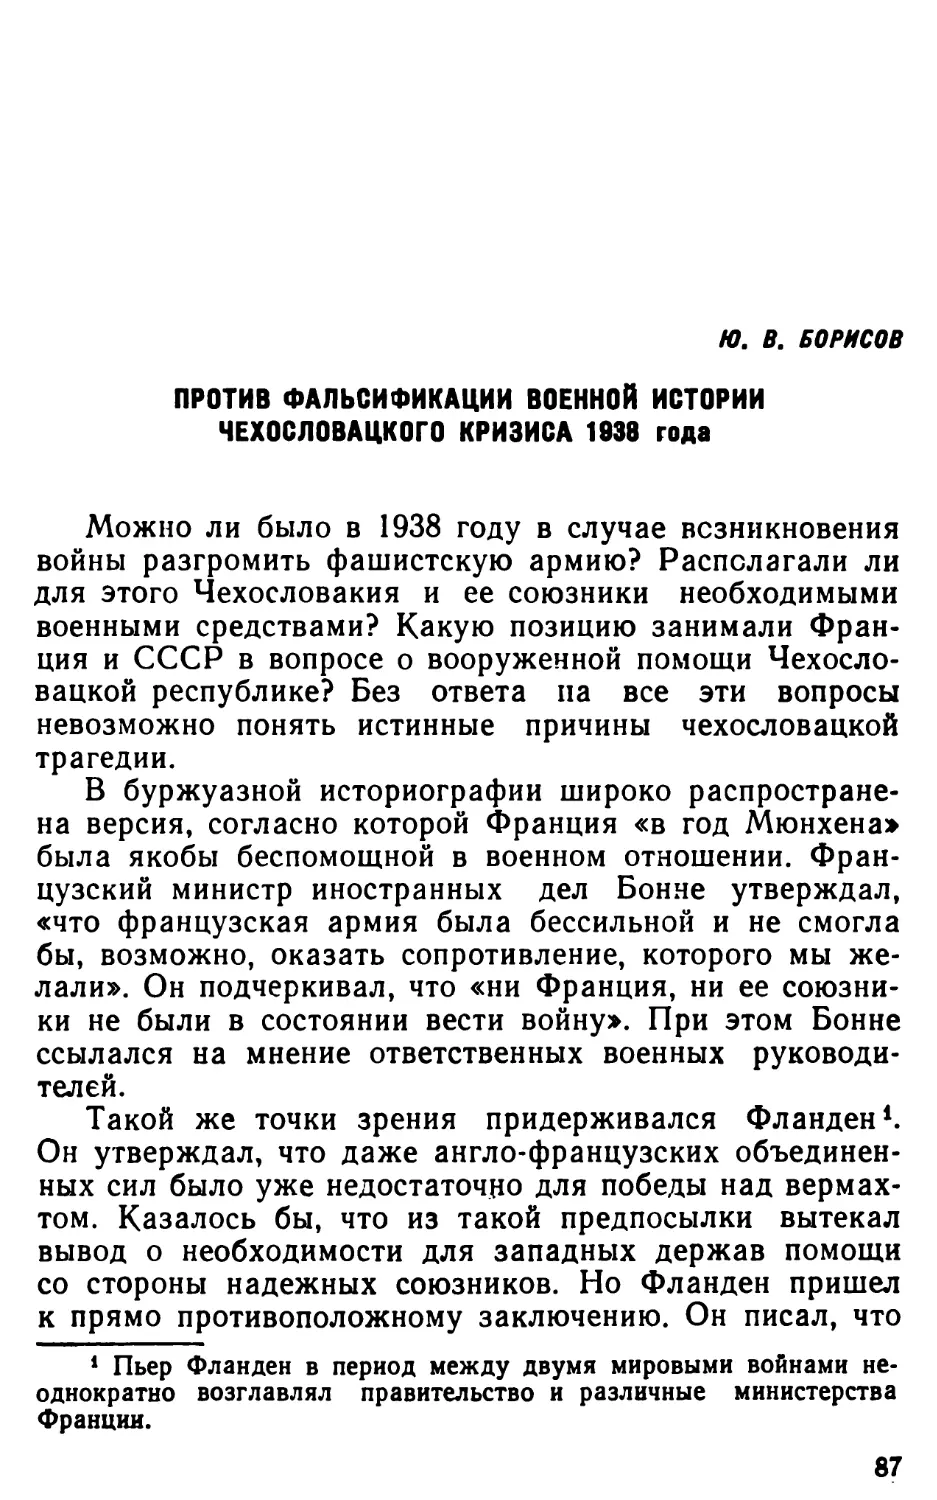 Ю. В. Борисов. Против фальсификации военной истории чехословацкого кризиса 1938 года